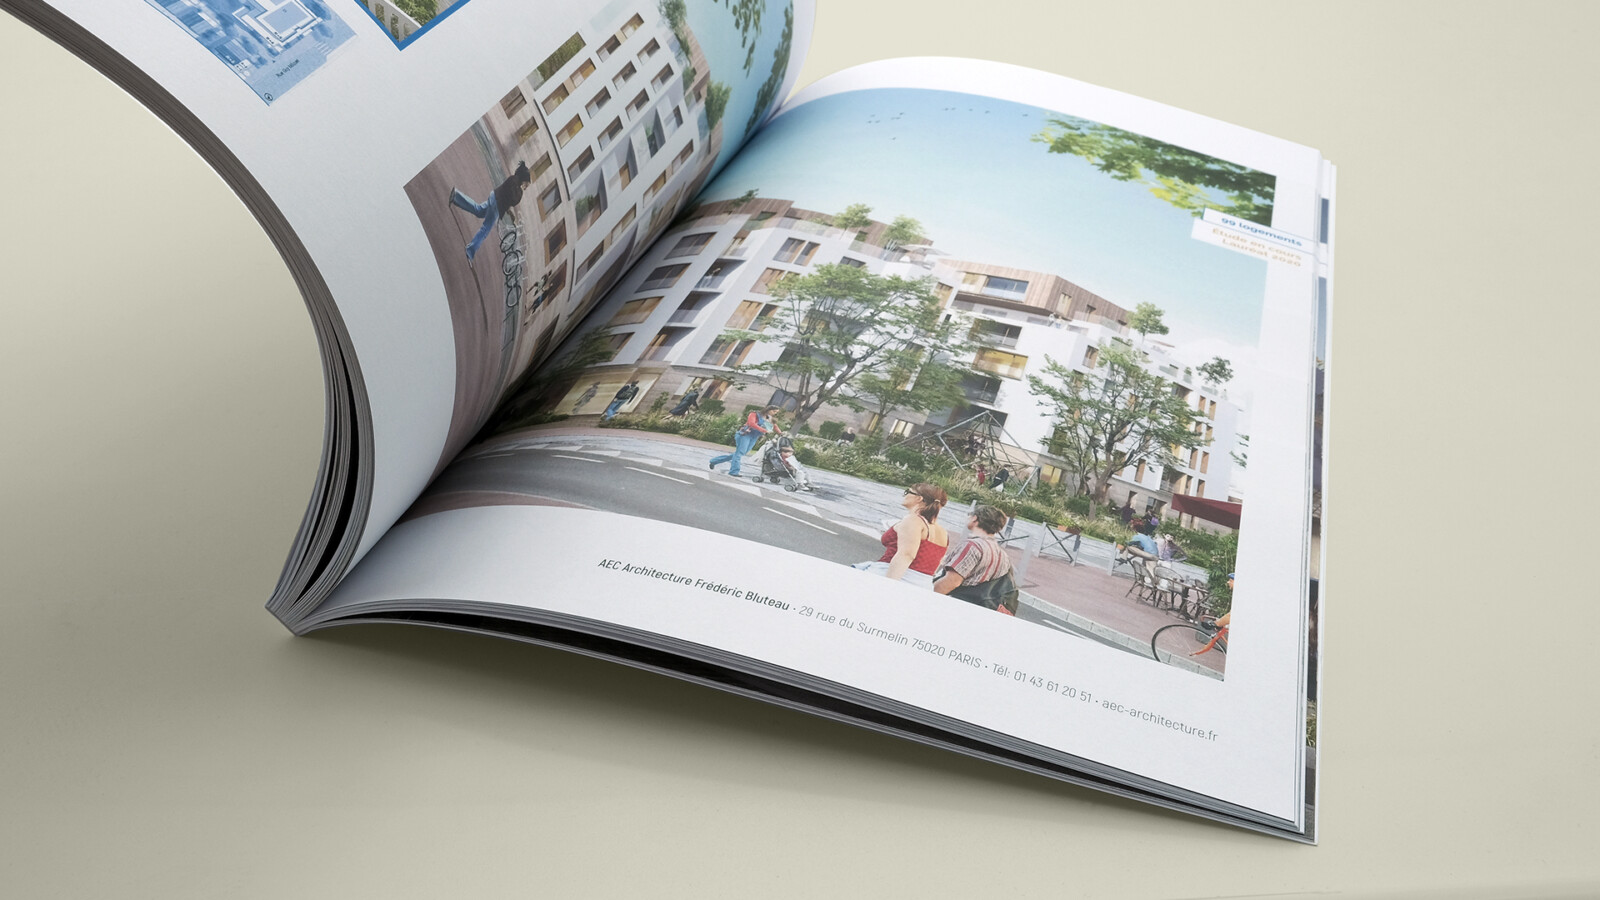 Vue zoomée sur le book projets d’AEC Architecture. Il est ouvert sur une page montrant un immeuble blanc de cinq étages avec un parterre végétalisé devant la façade.